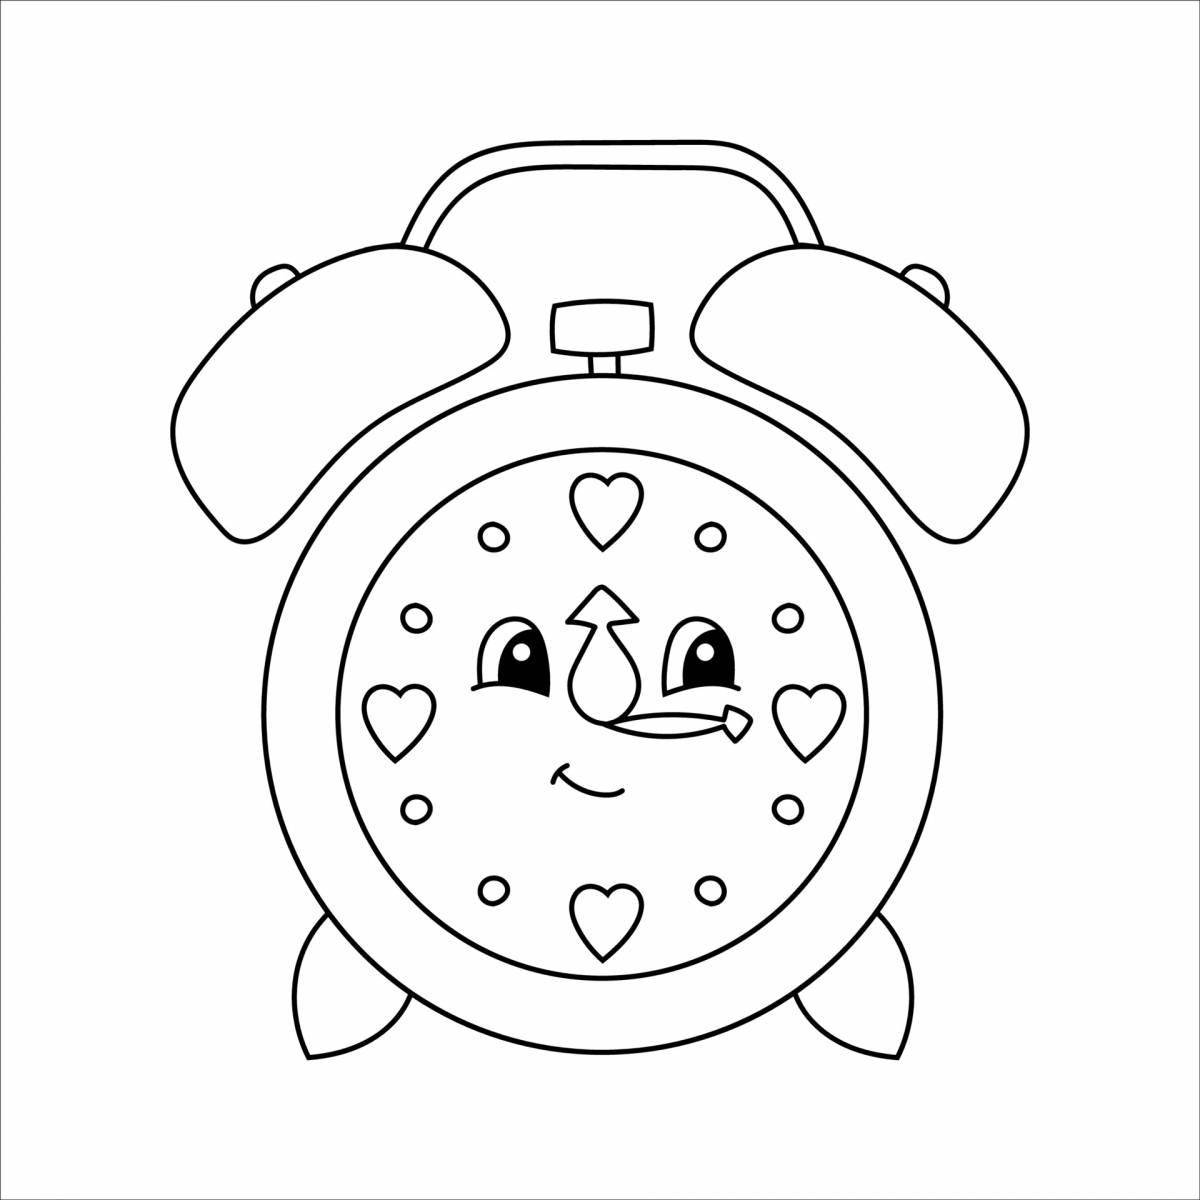 Children's alarm clock coloring book